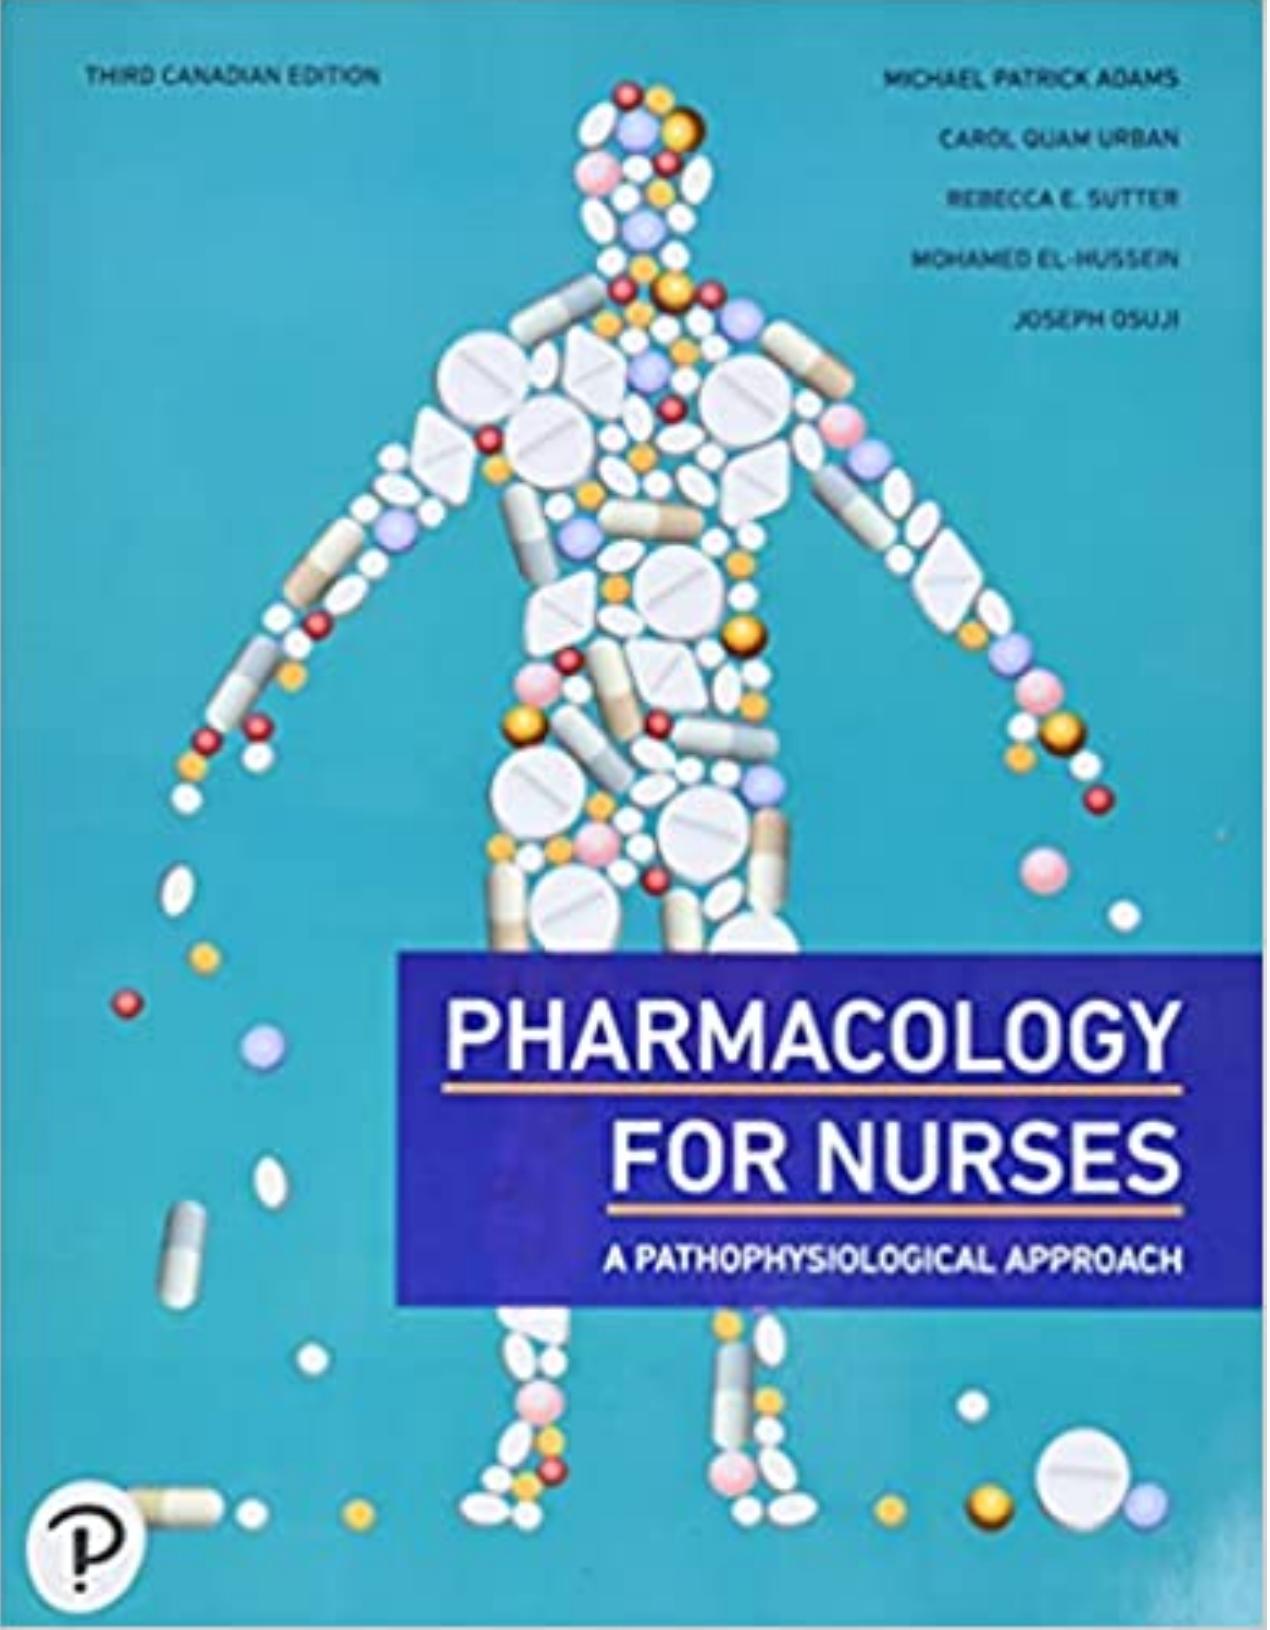 (eBook PDF)Pharmacology for Nurses, 3rd Canadian Edition by Michael Adams,Carol Urban